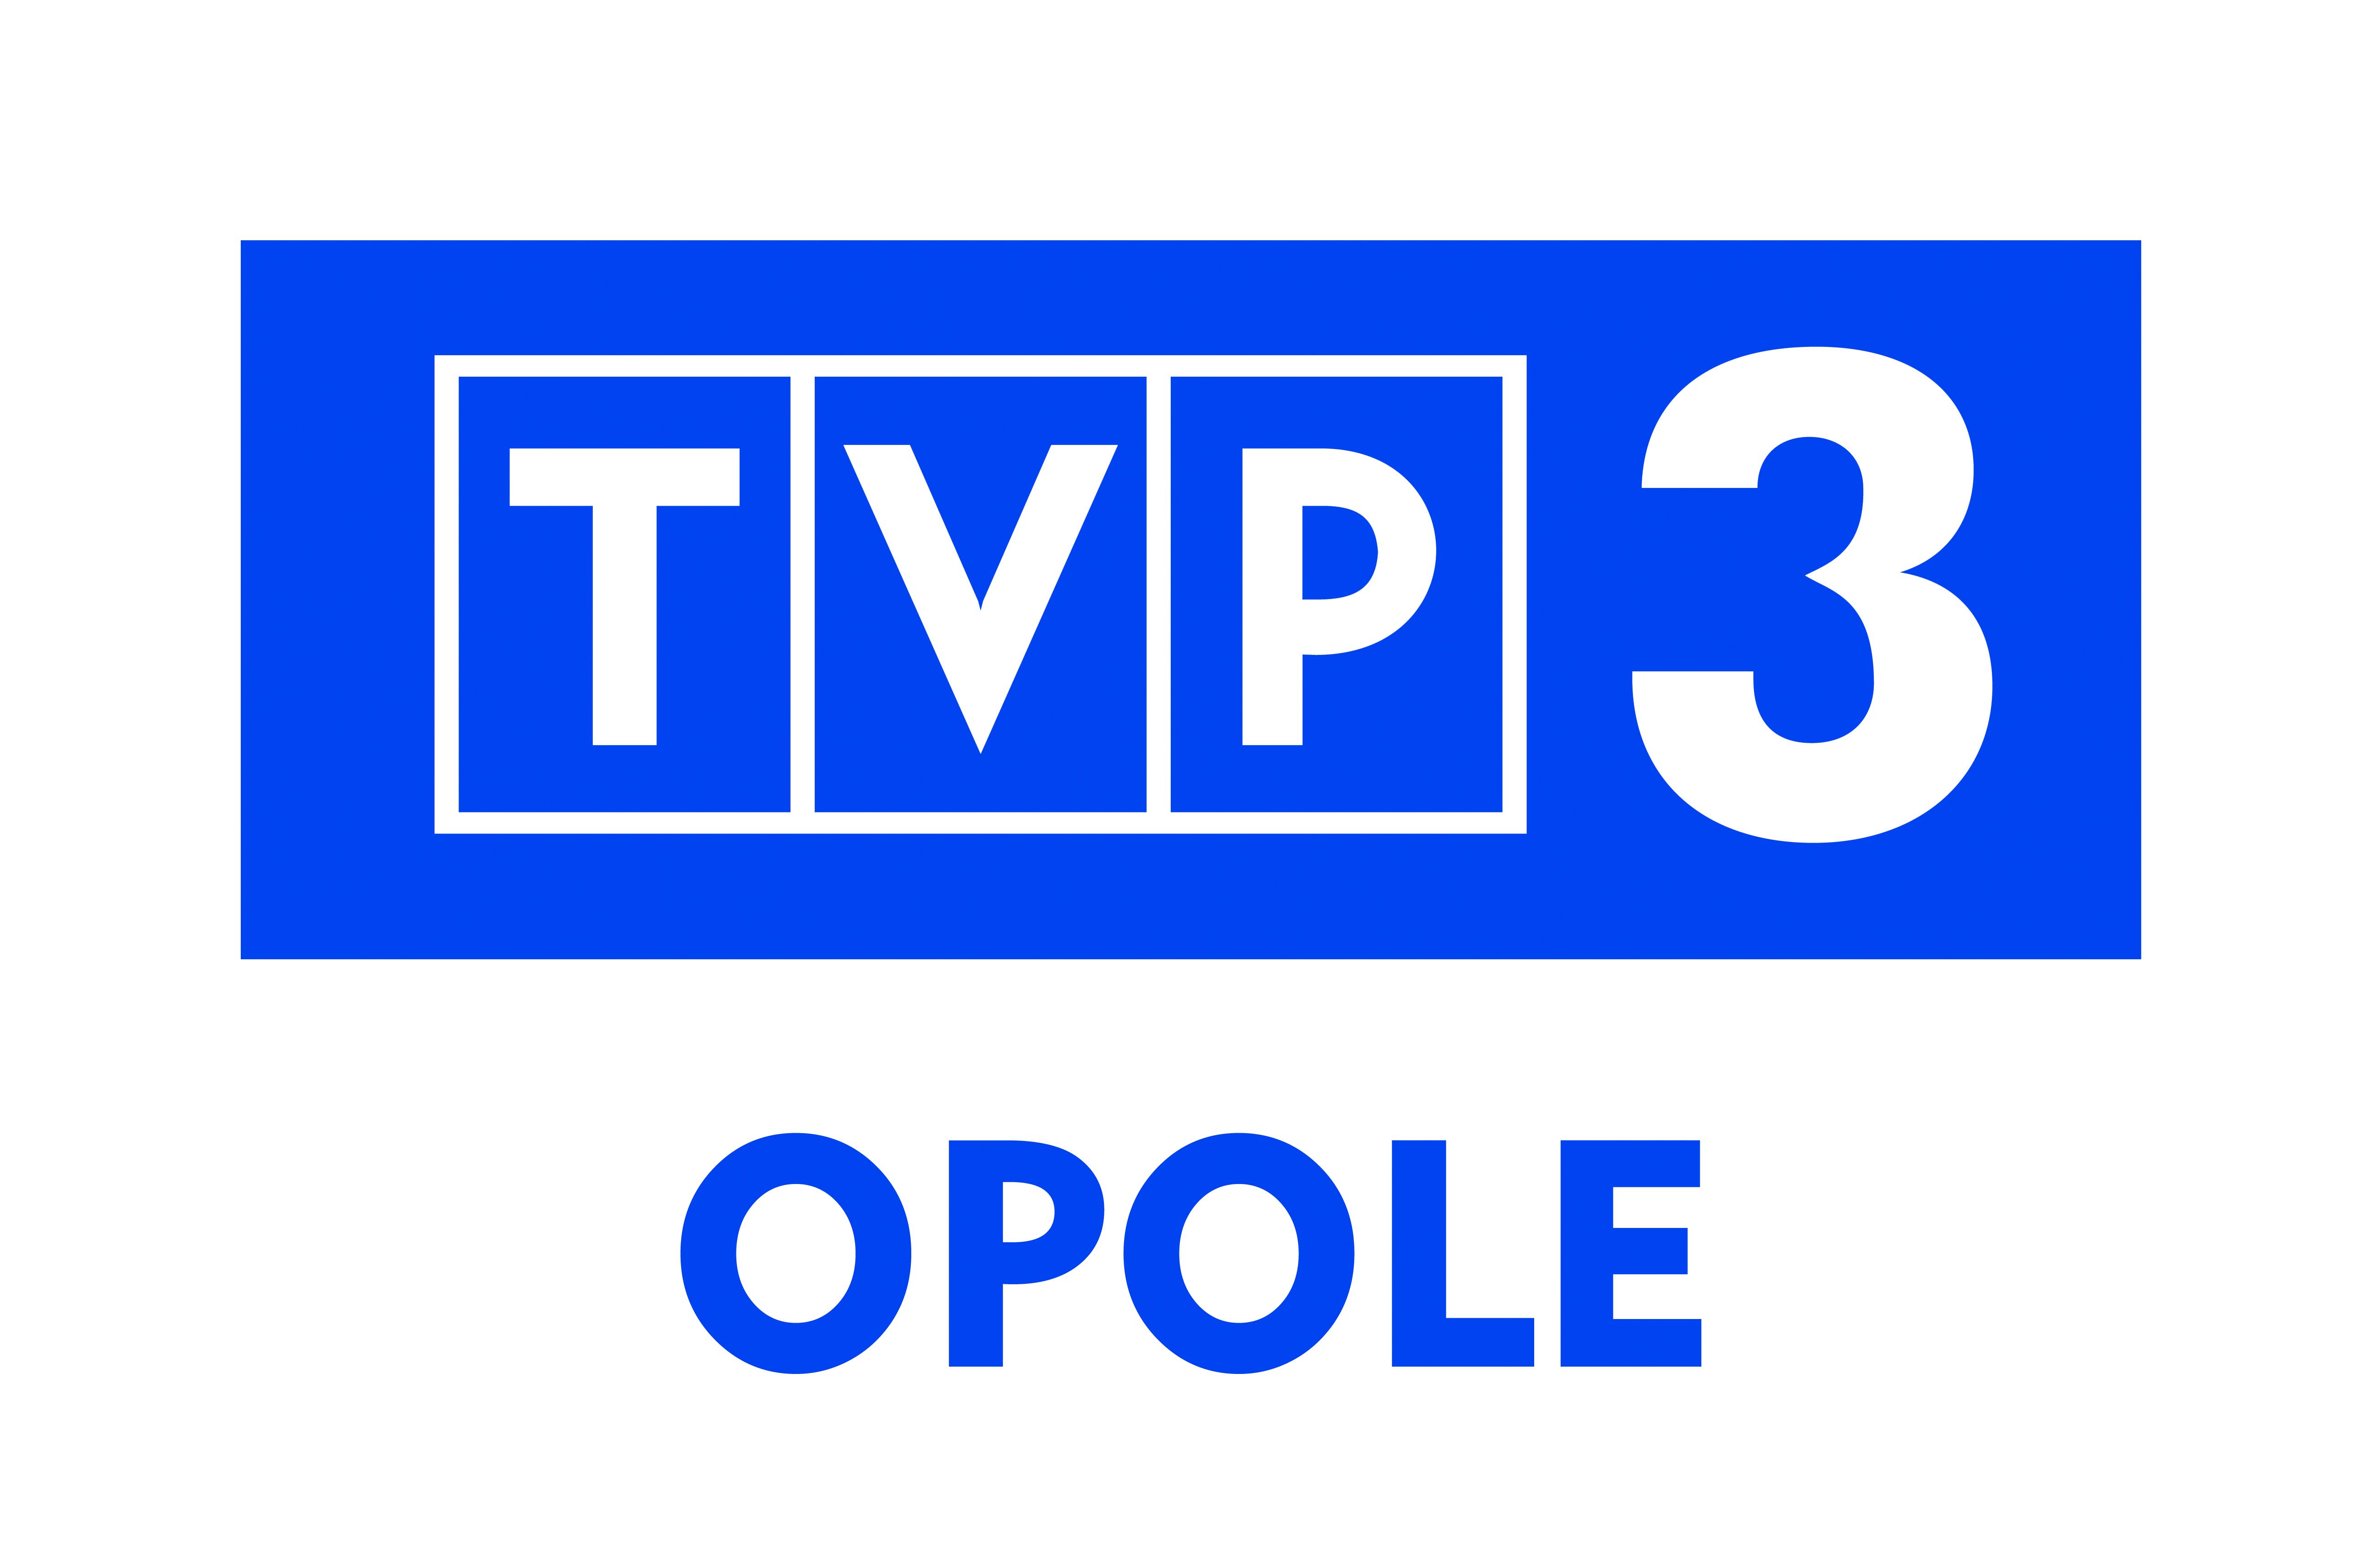 "TVP3